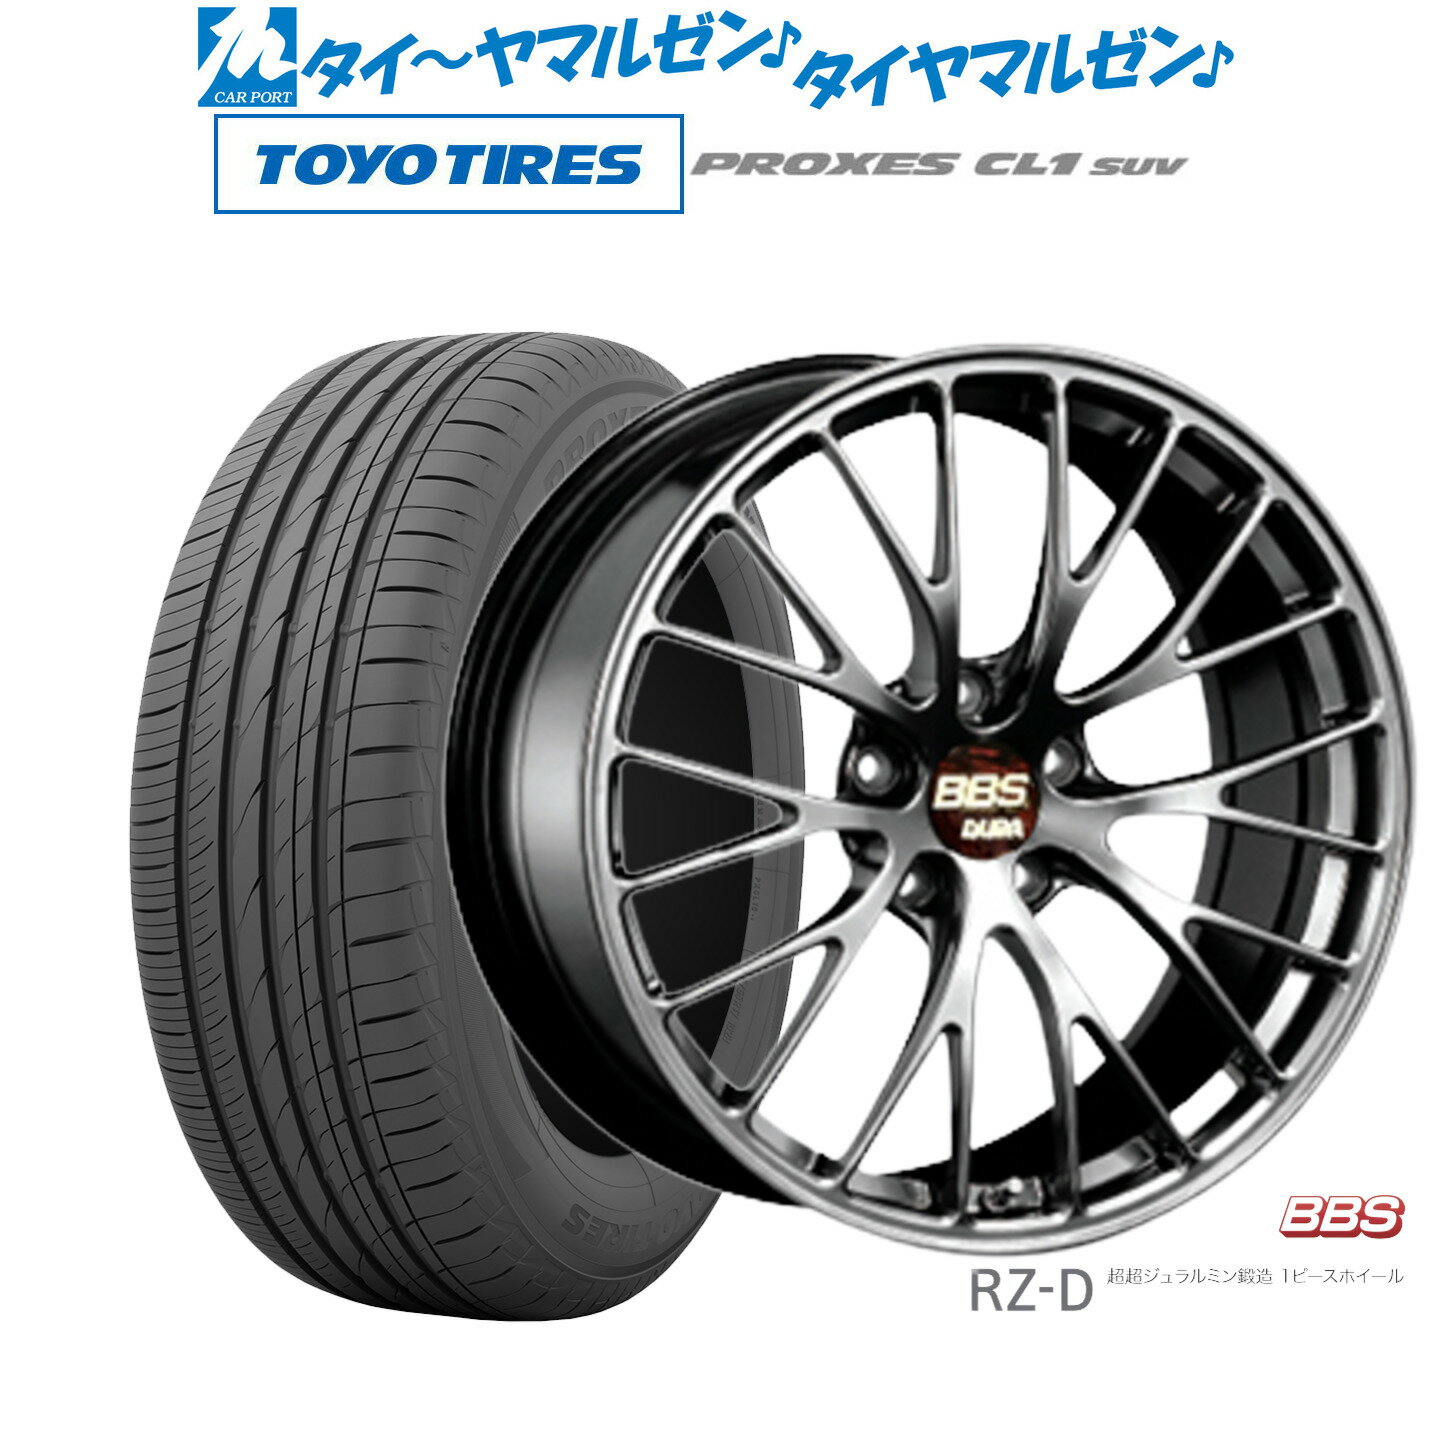 [5/18]ストアポイント3倍!!新品 サマータイヤ ホイール4本セットBBS JAPAN RZ-D20インチ 8.5Jトーヨータイヤ プロクセス PROXES CL1 SUV 245/45R20